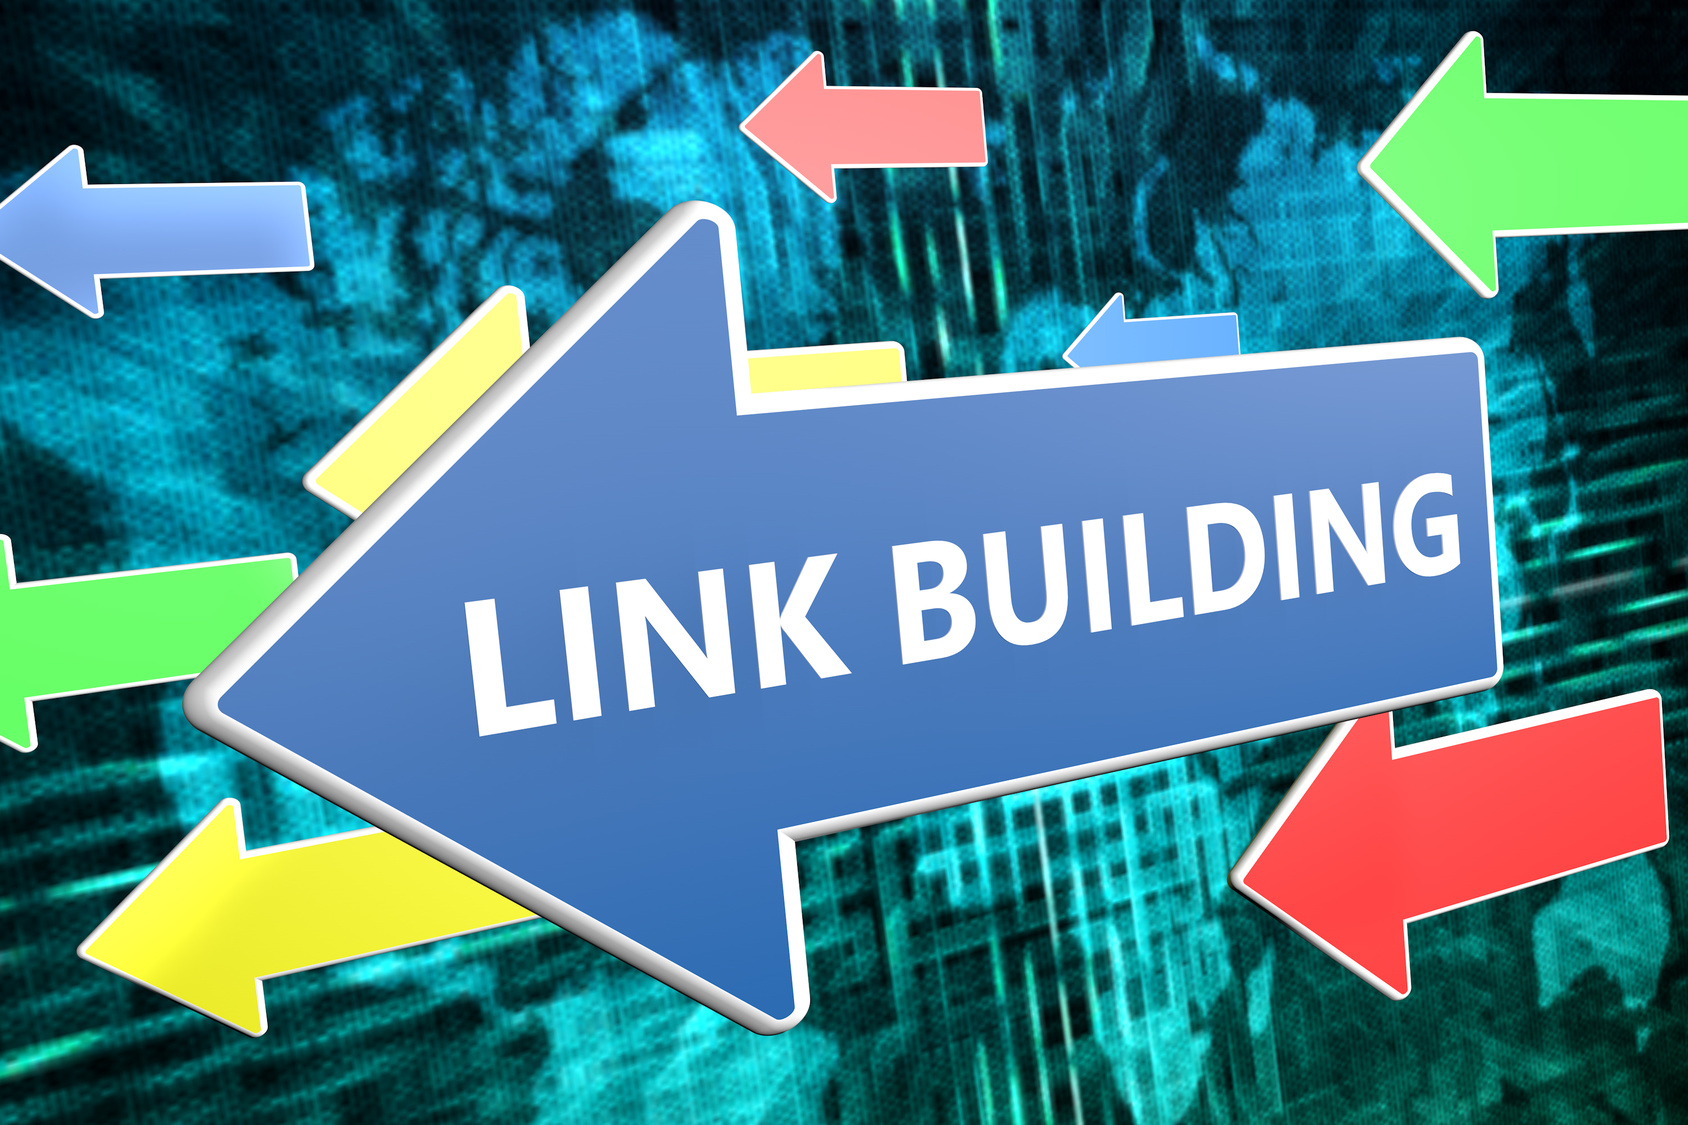 Link Building Techniques